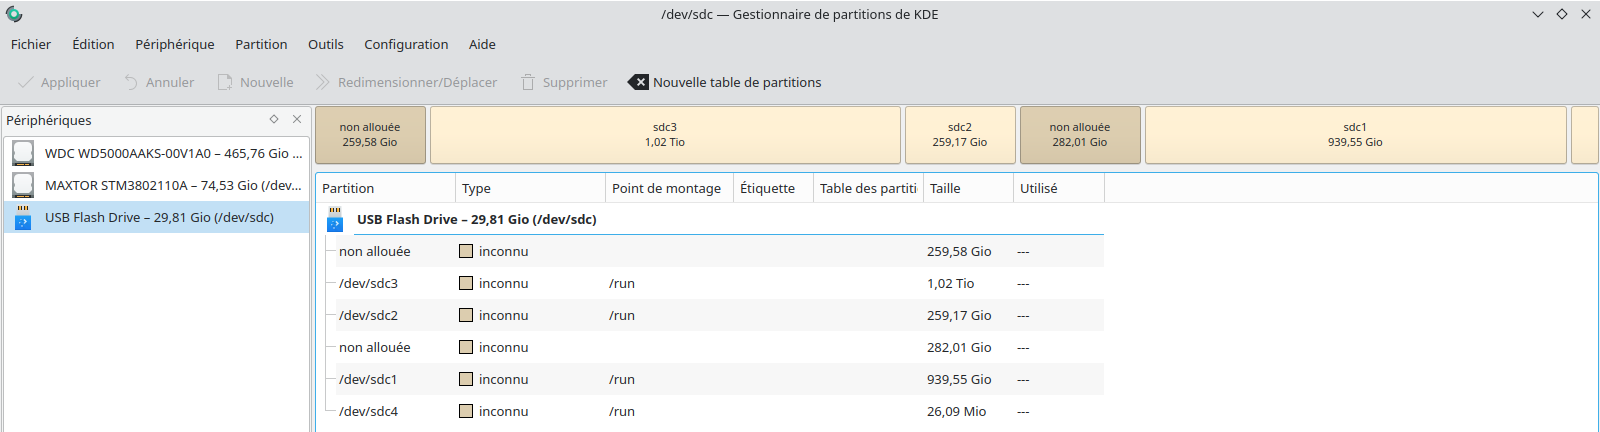 MCeqT1qFSZG_gestionnaire-partition-KDE.png